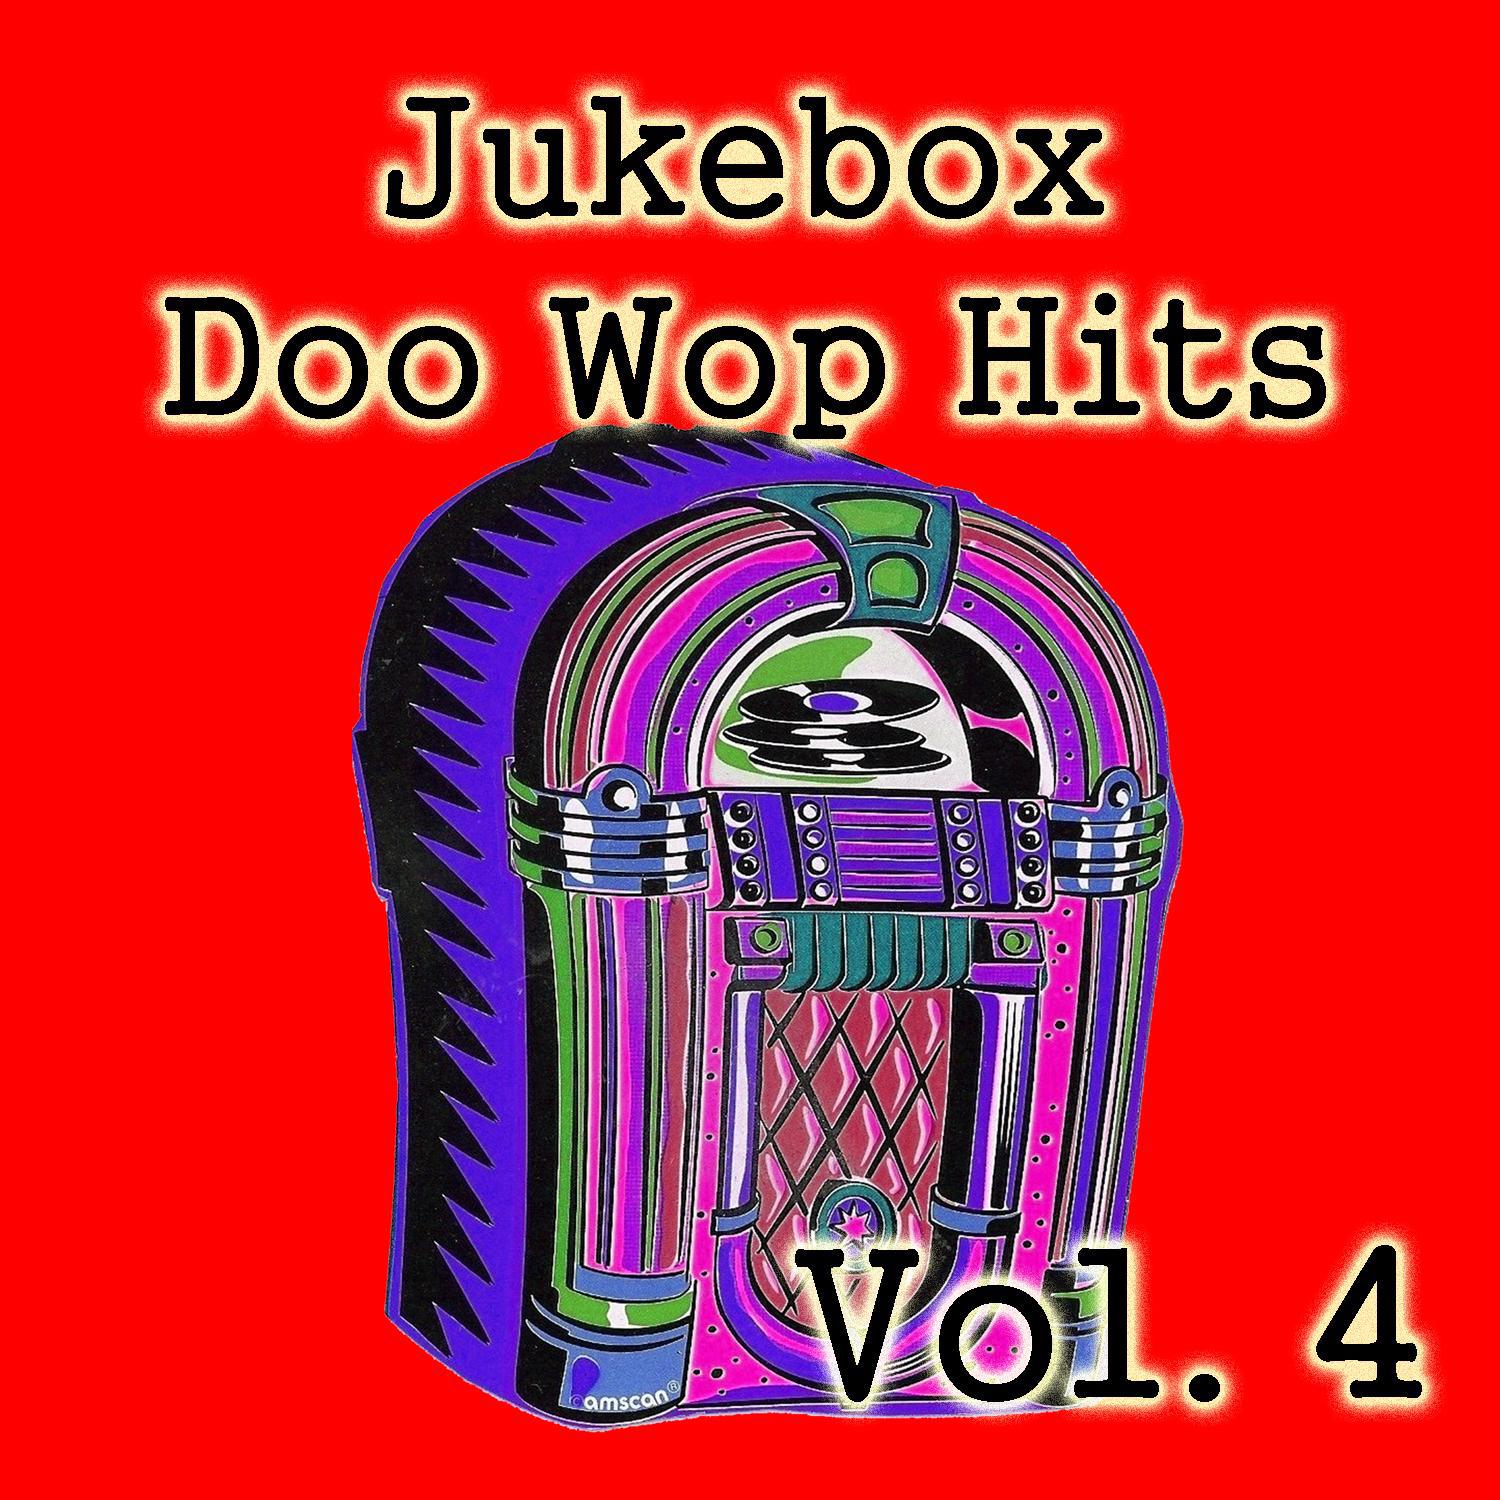 Jukebox Doo Wop Hits, Vol. 4